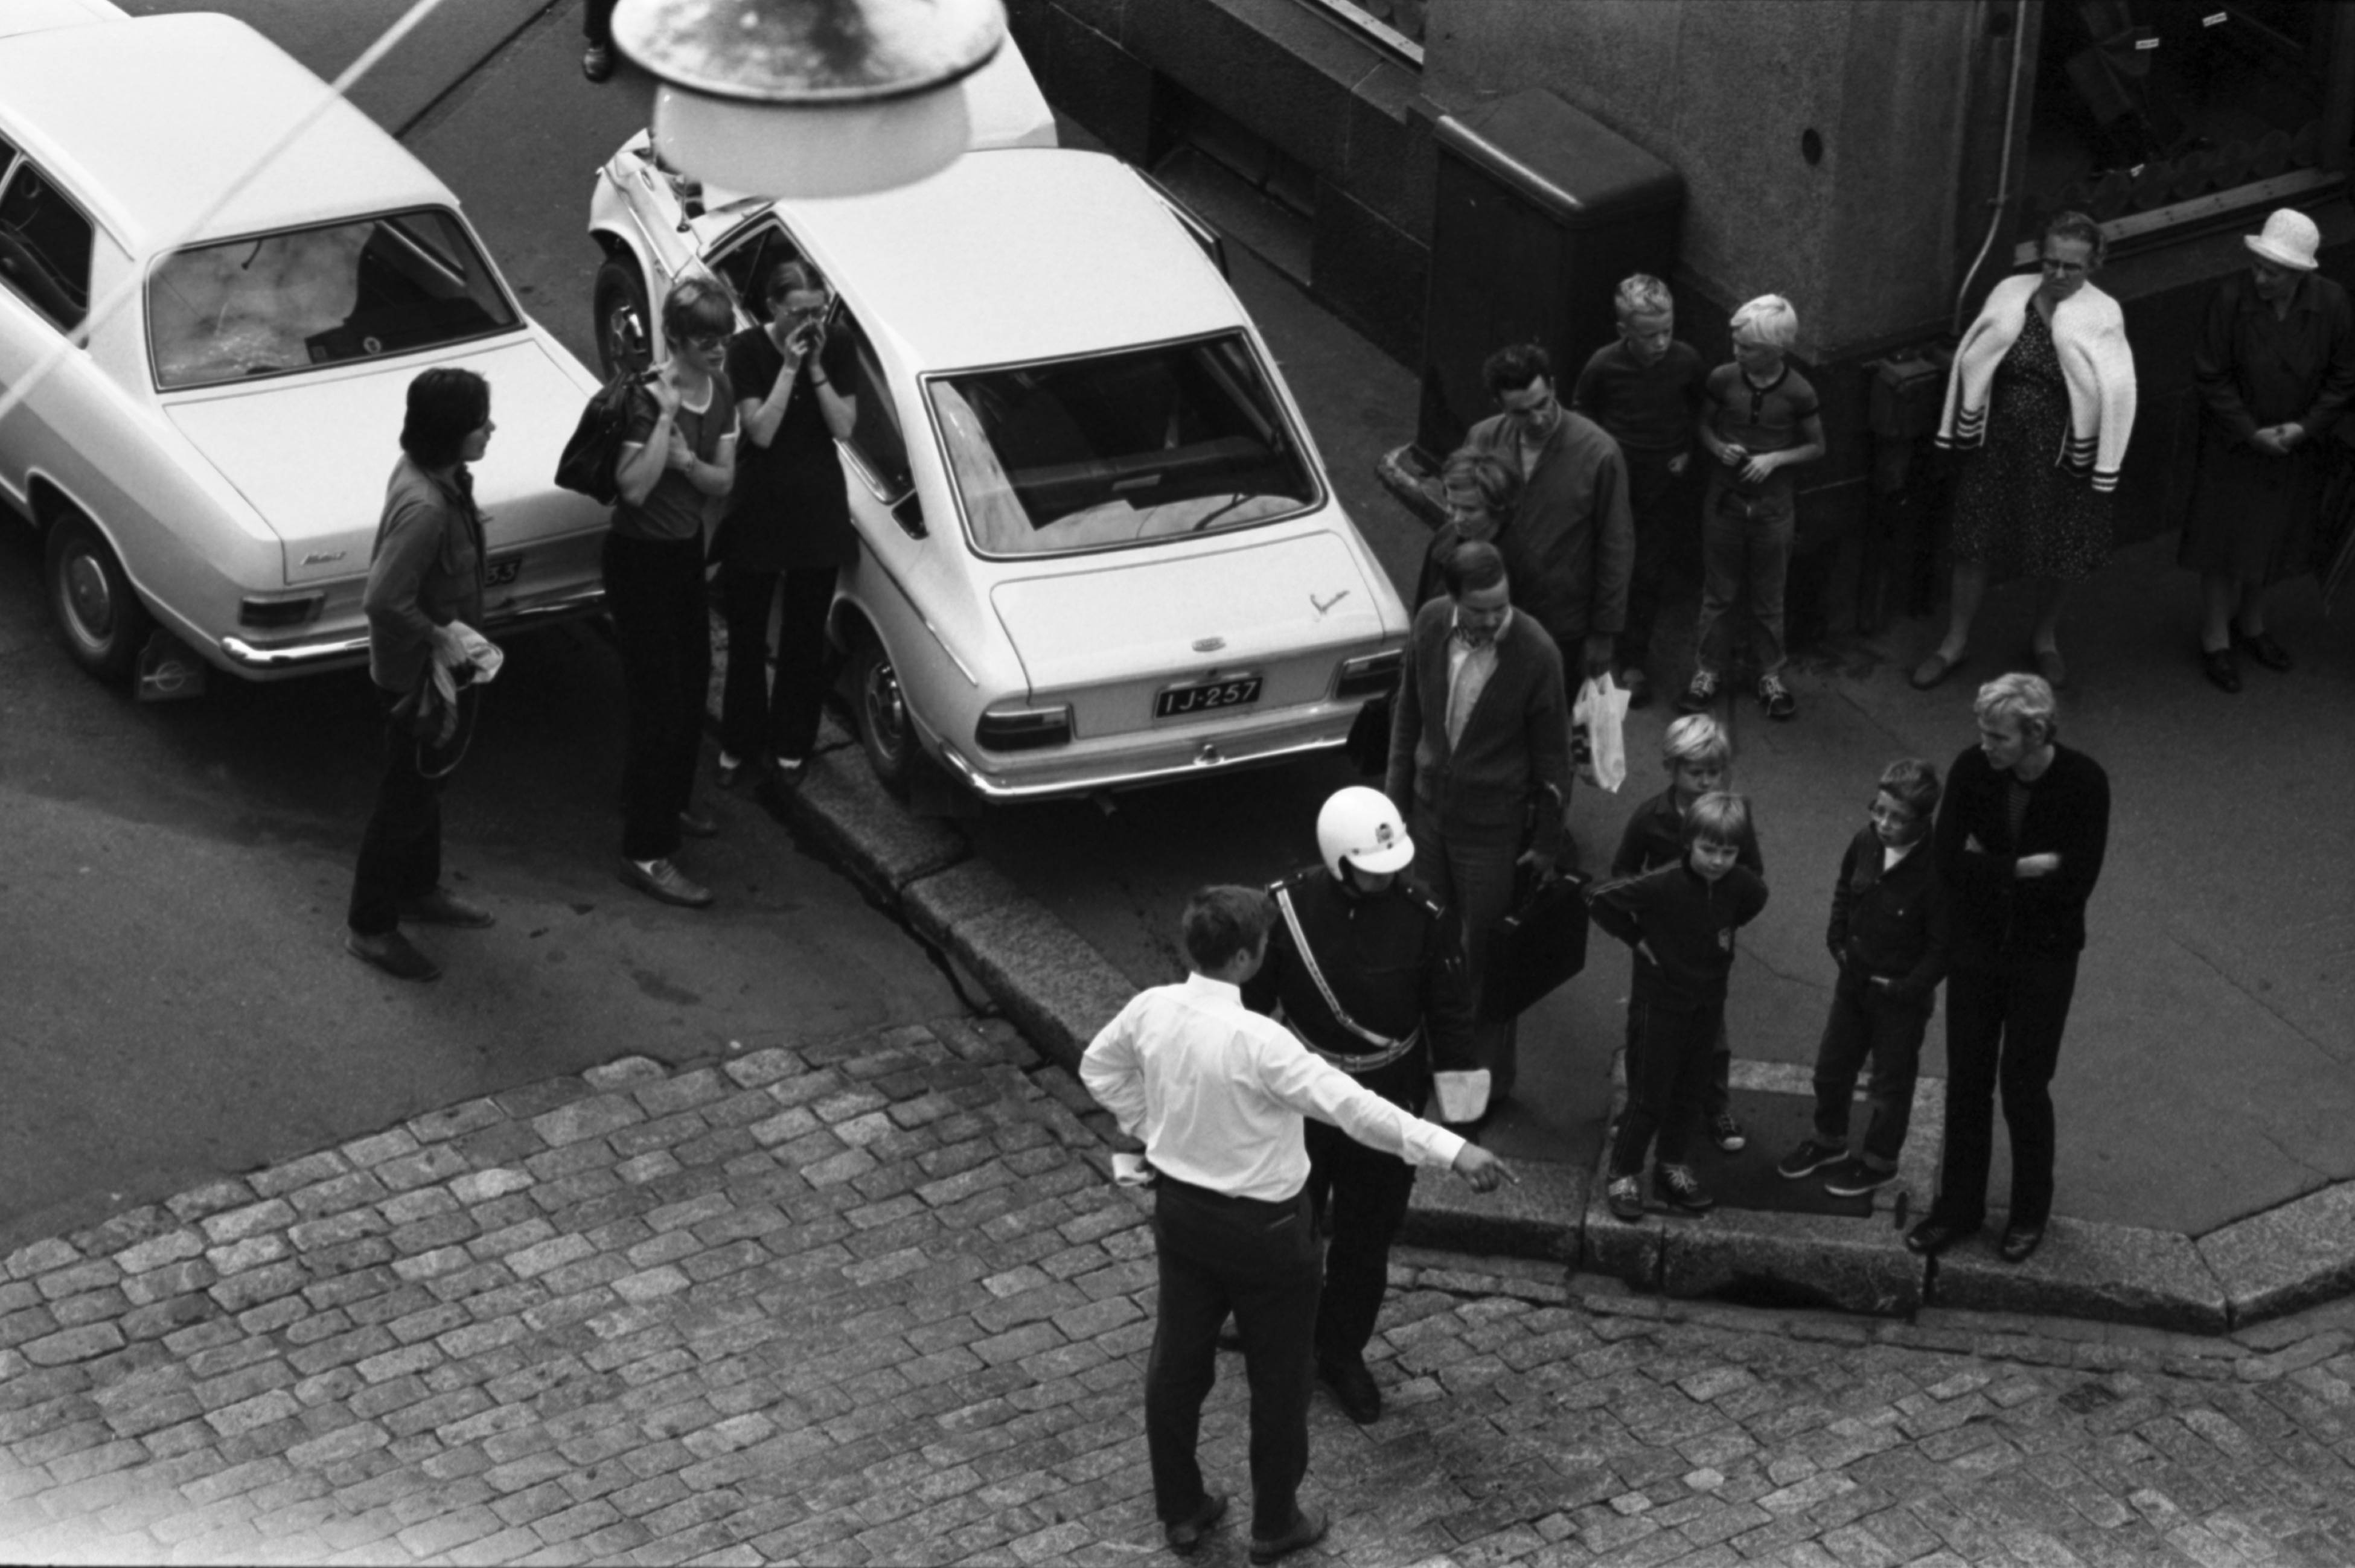 Meritullinkatu 24. Poliisi selvittelemässä autokolaria ihmisten seuratessa tilannetta Meritullinkadun ja Liisankadun risteyksessä. Kuvattu Liisankatu 7:n neljännen kerroksen ikkunasta.